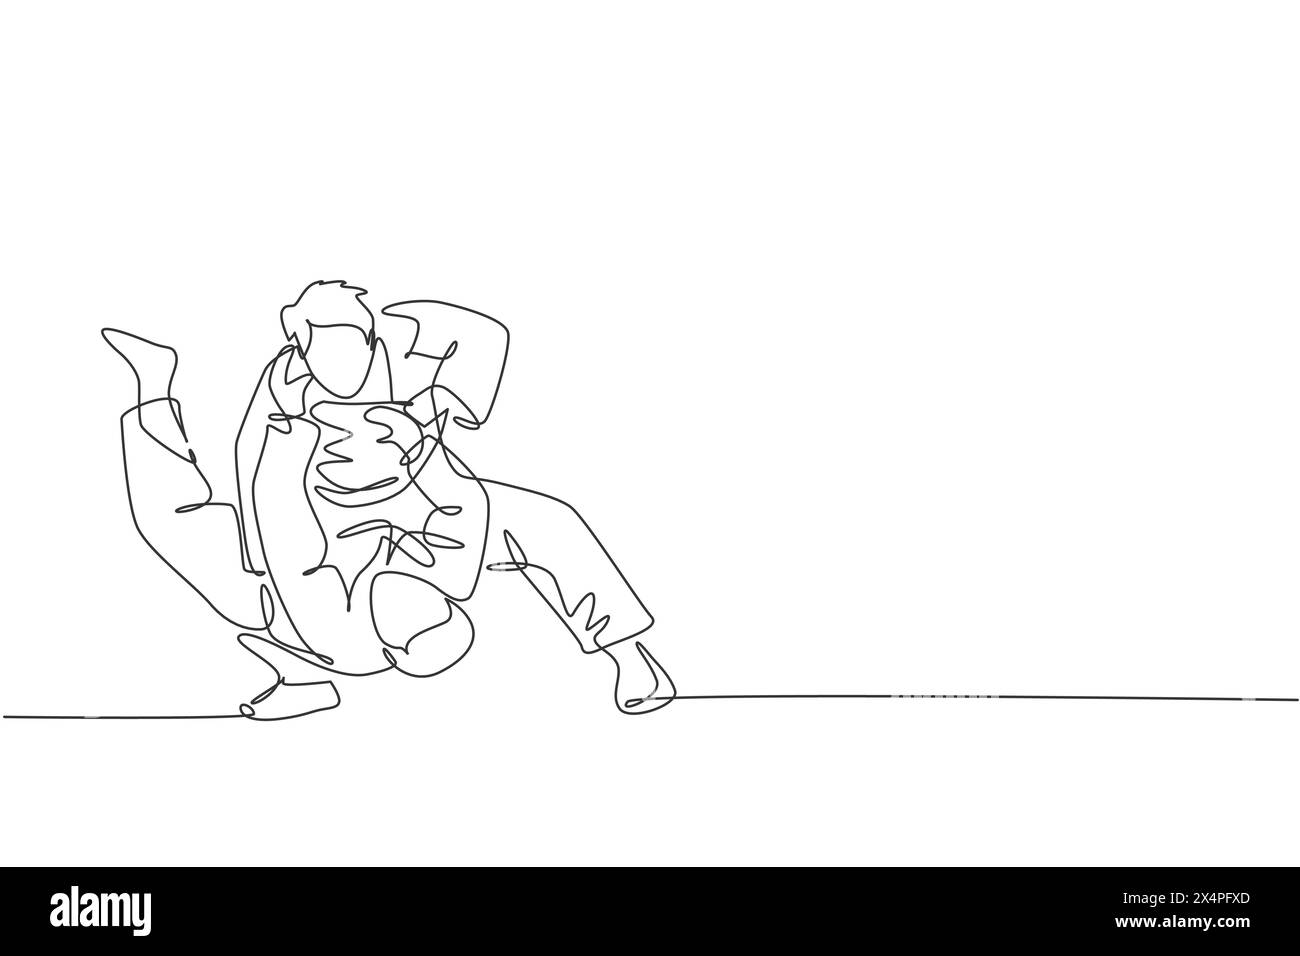 Un dessin au trait continu de deux jeunes hommes sportifs se concentrent sur la technique de judo d'entraînement à la salle de sport. Concept de compétition sportive de combat de JIU jitsu. Dy Illustration de Vecteur